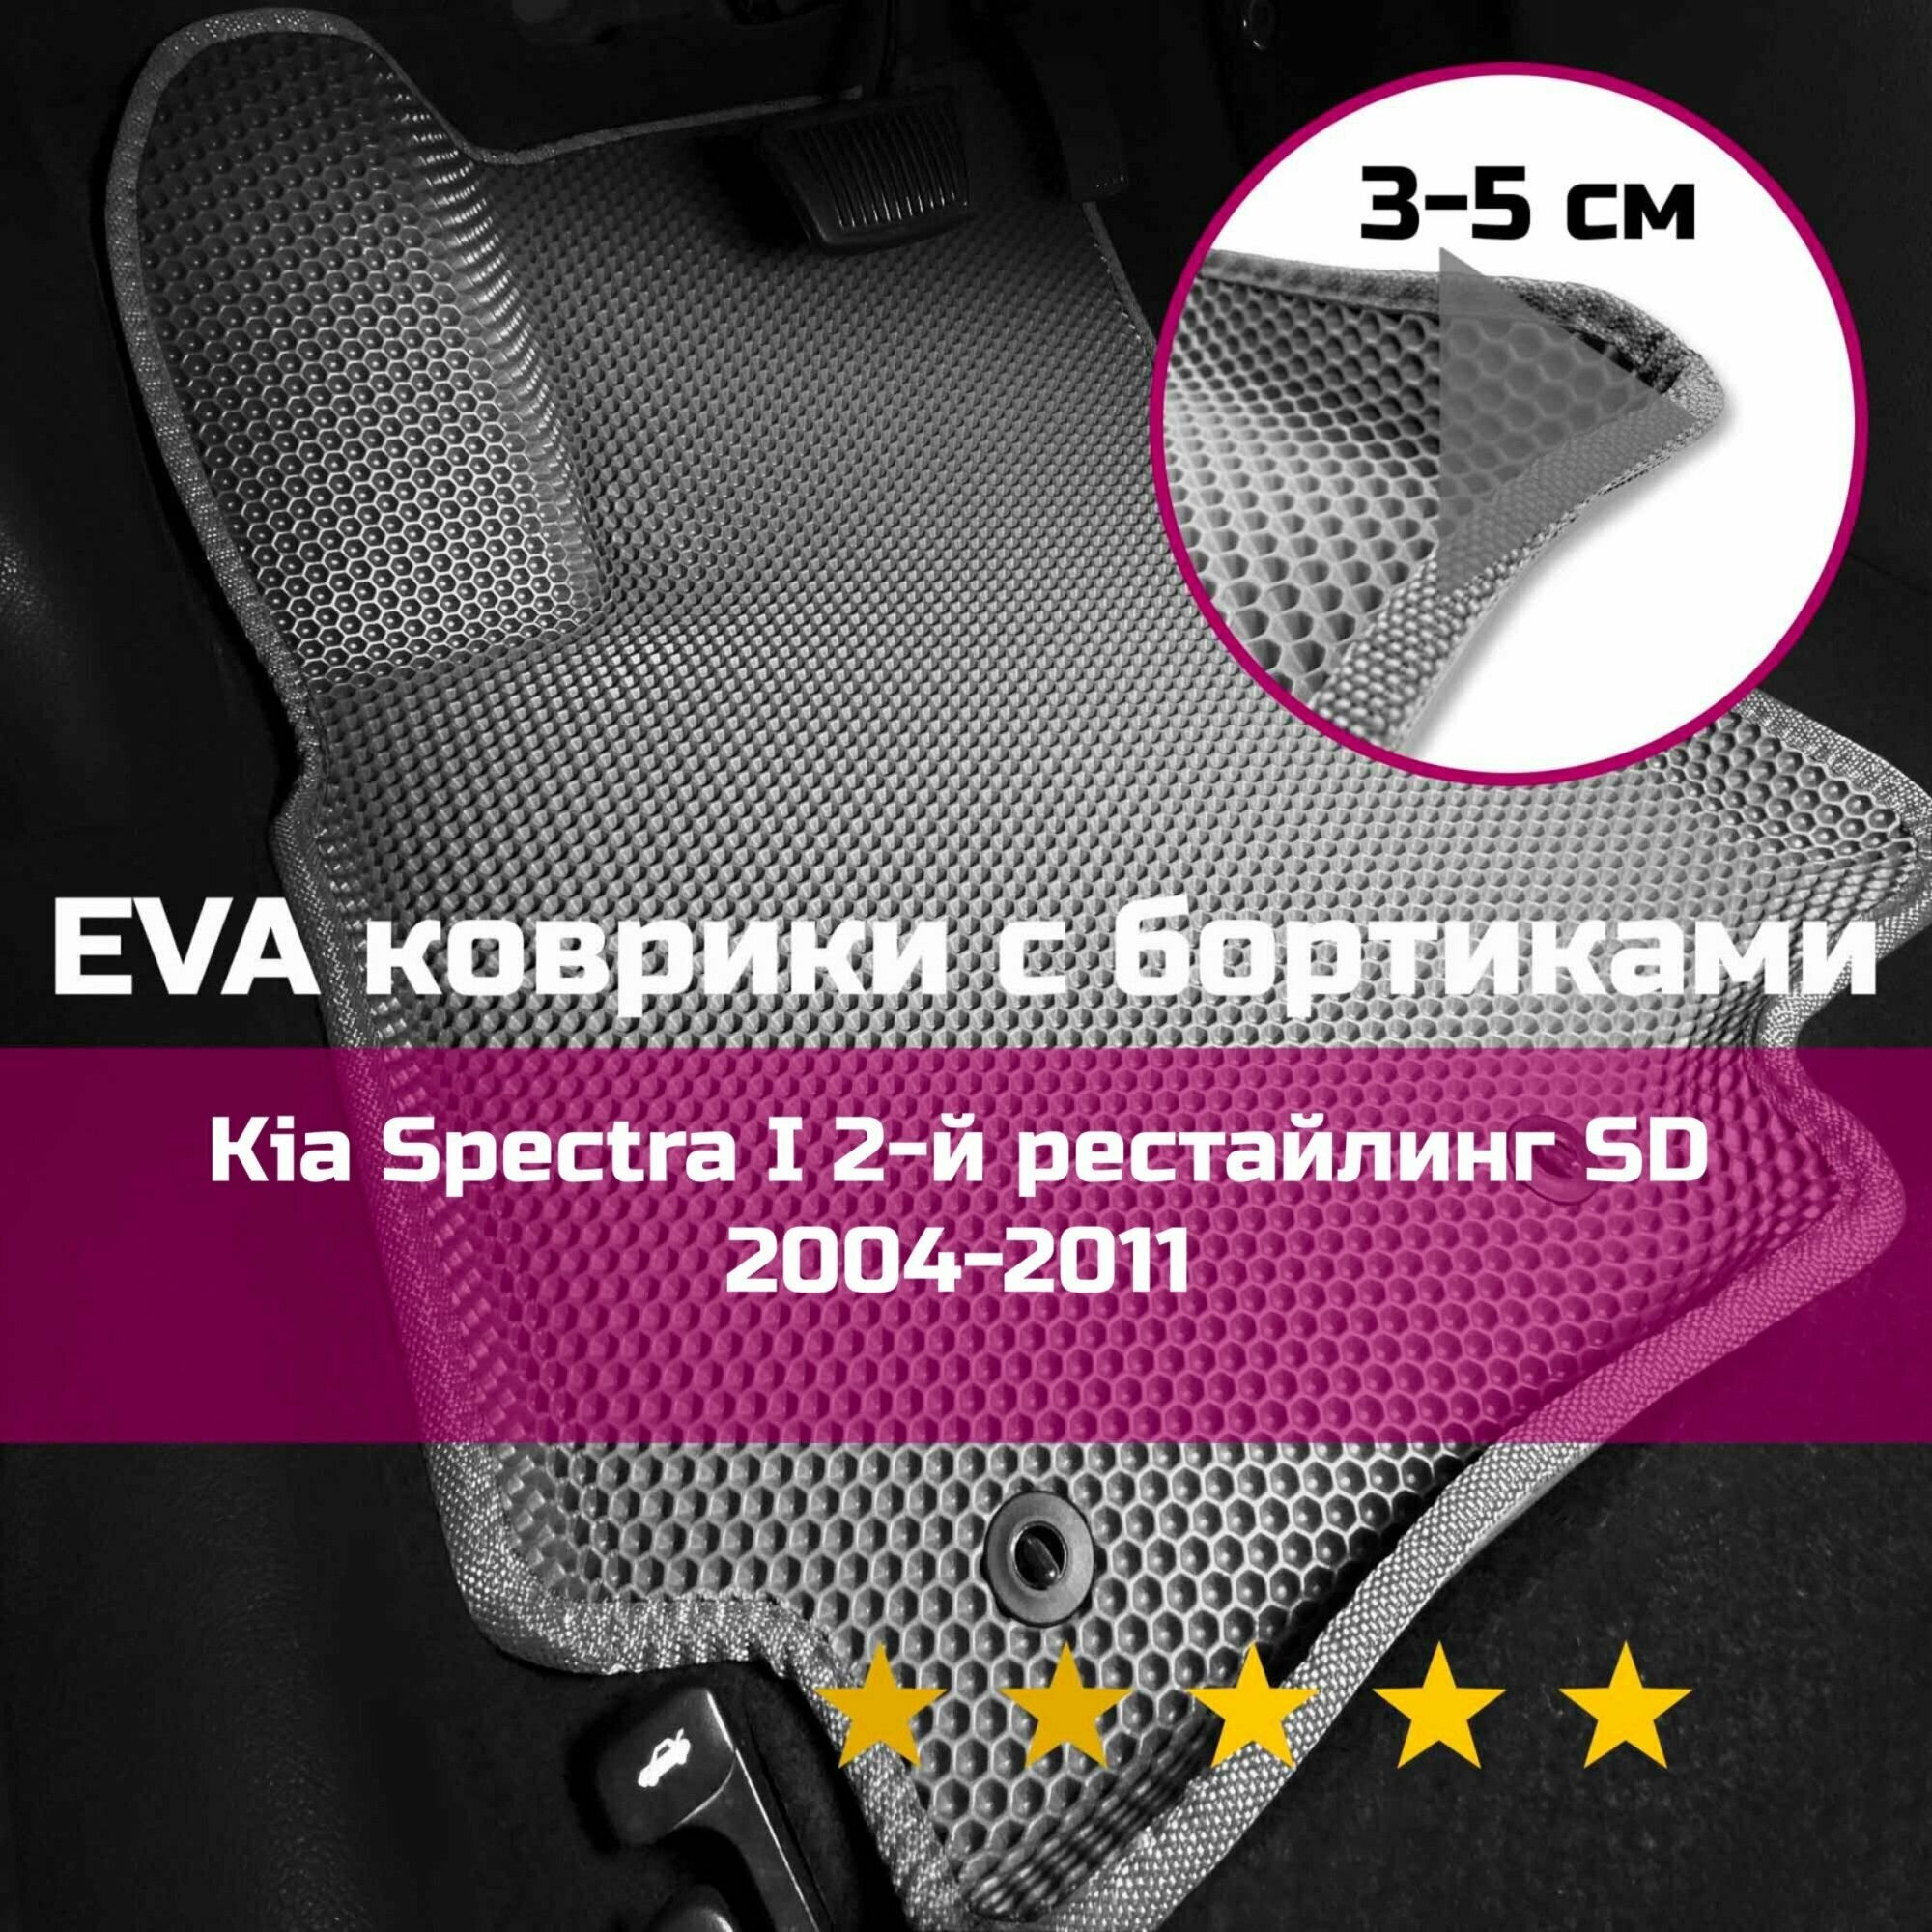 3Д коврики ЕВА (EVA, ЭВА) с бортиками на Kia Spectra 1 2-й рестайлинг SD 2004-2011 Киа Спектра Левый руль Соты Серый со светло-серой окантовкой